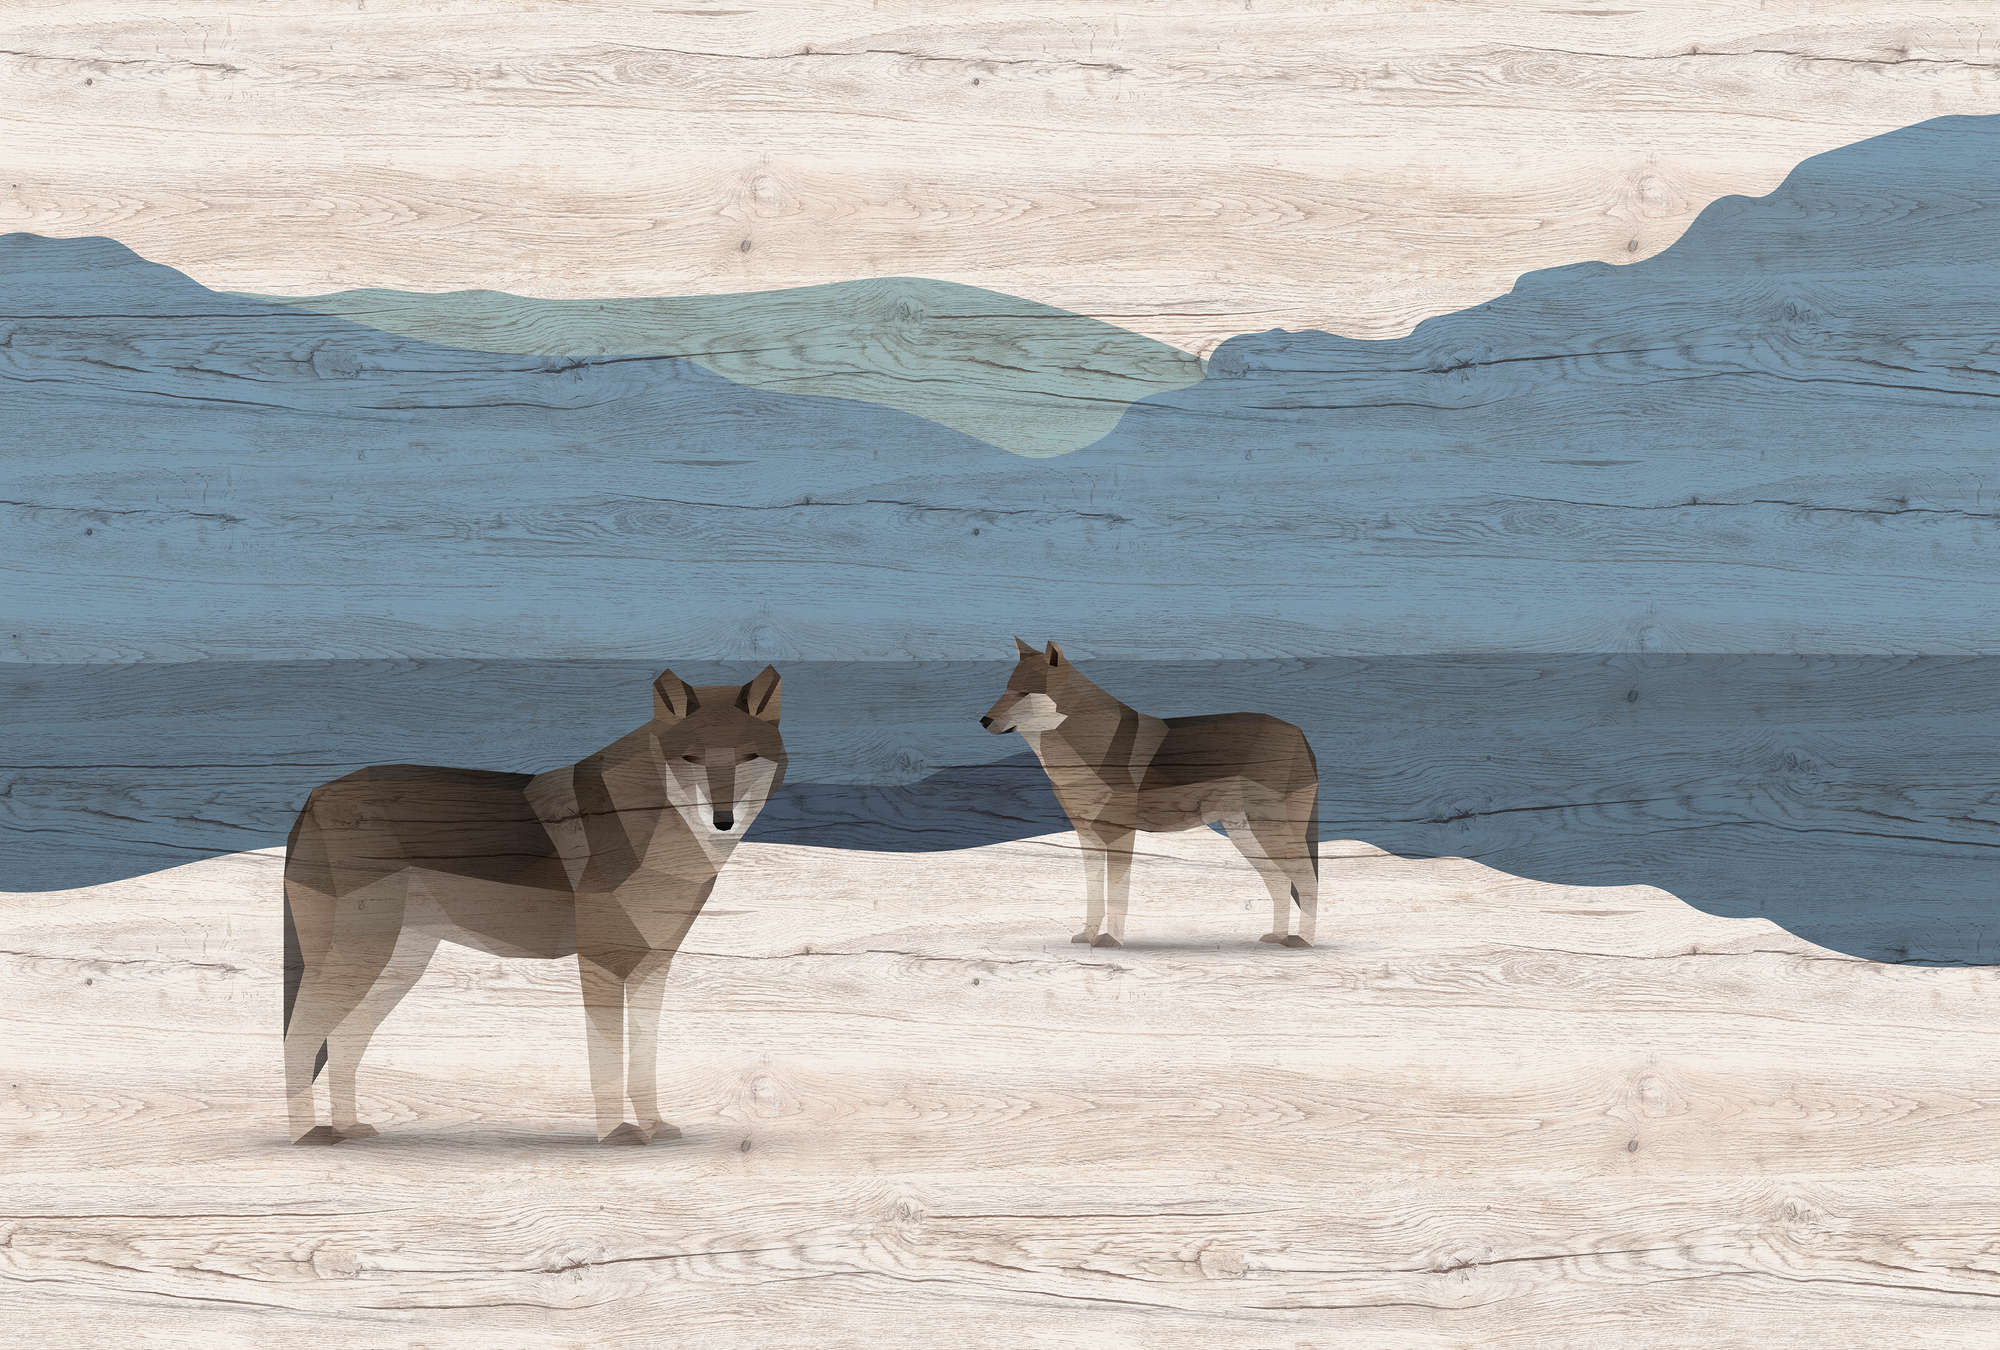             Yukon 1 - Papier peint montagne & chiens avec structure en bois
        